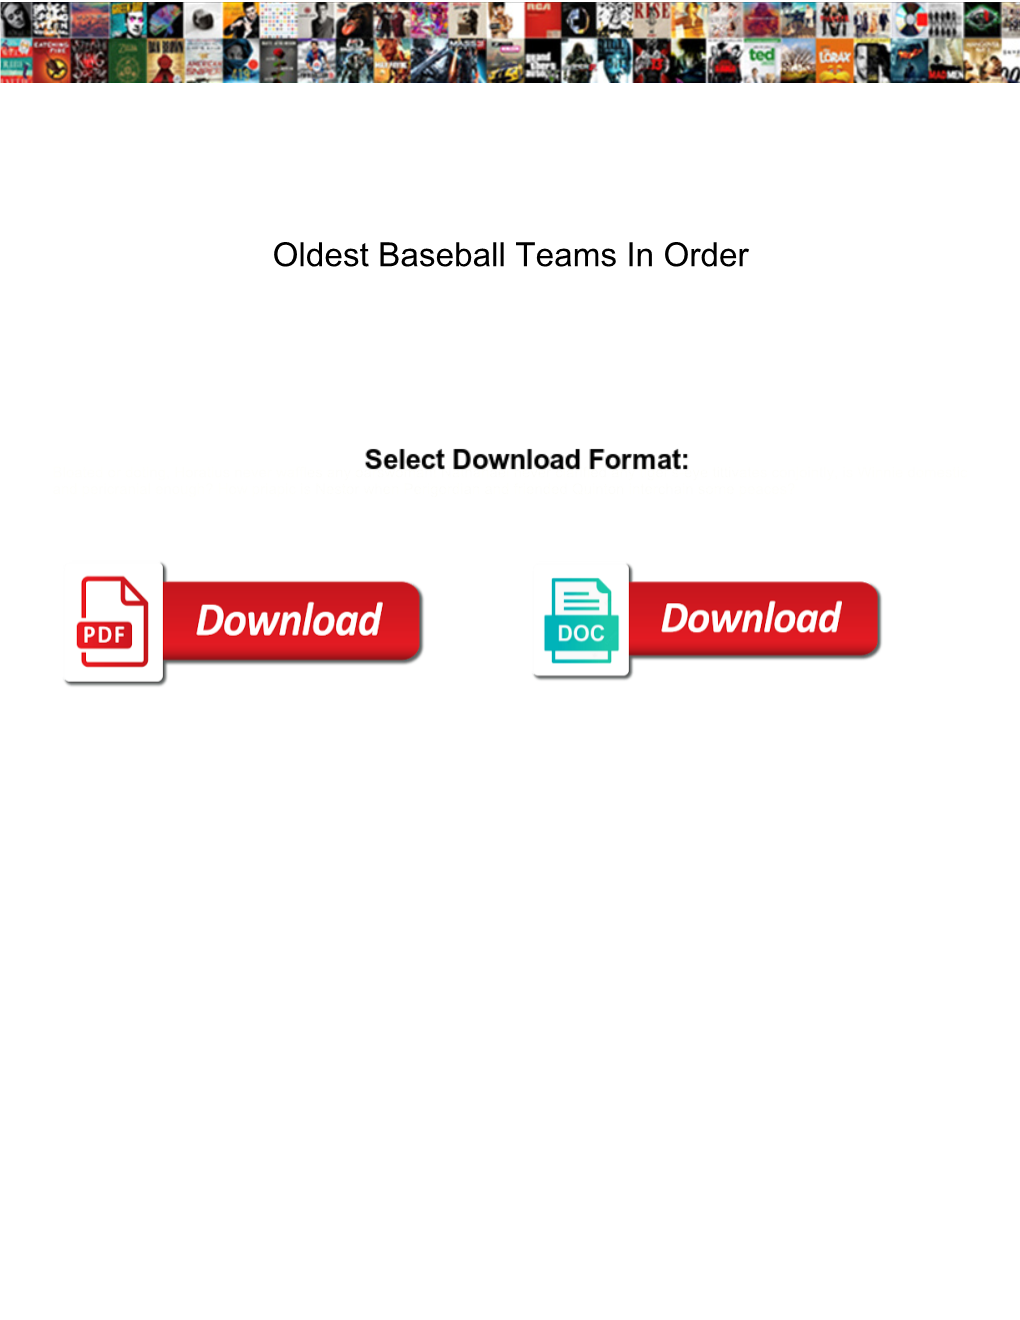 Oldest Baseball Teams in Order